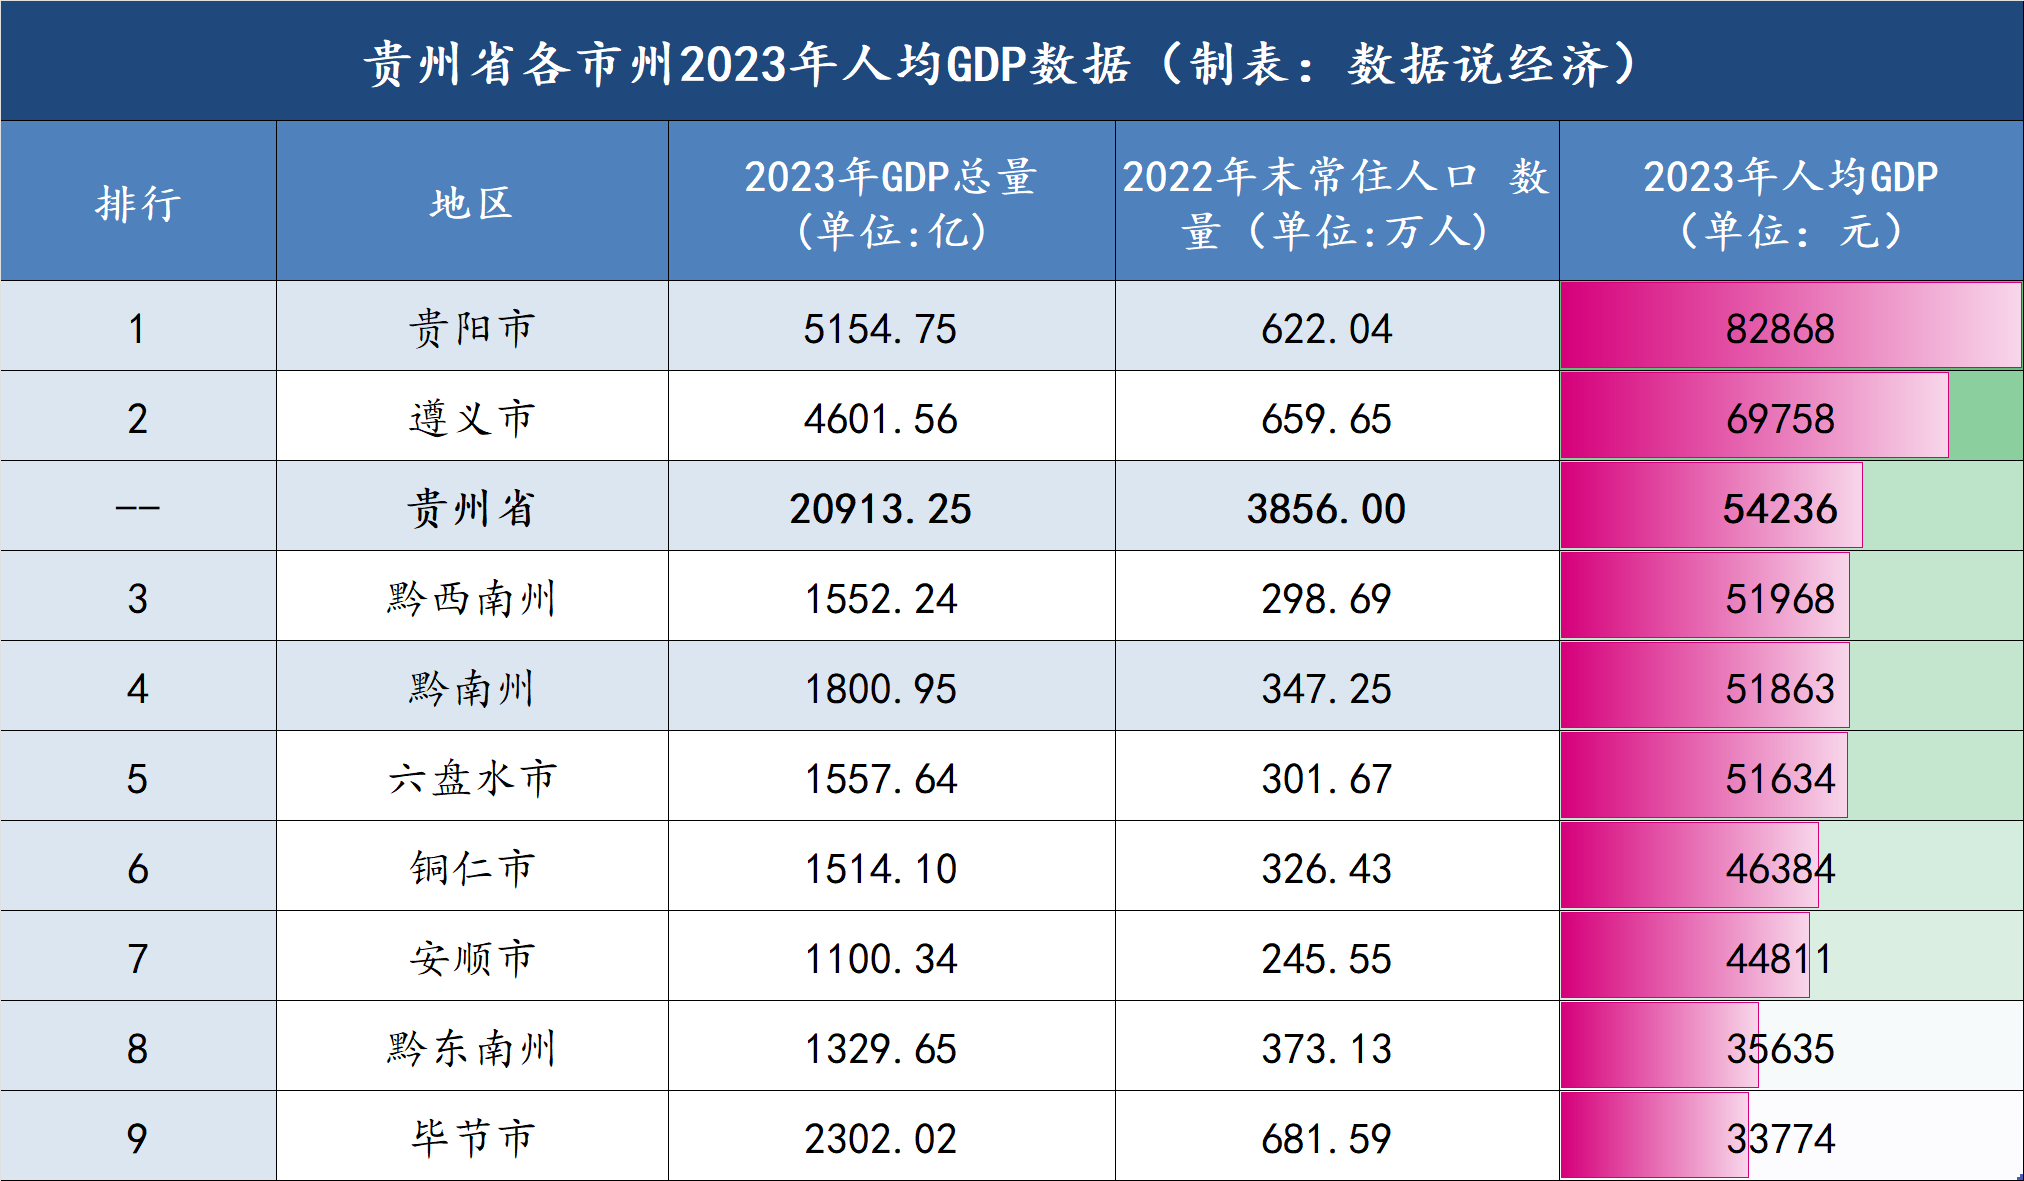 贵阳市和遵义市两市为贵州省内2023年人均gdp的第一档,均超过6万元,是